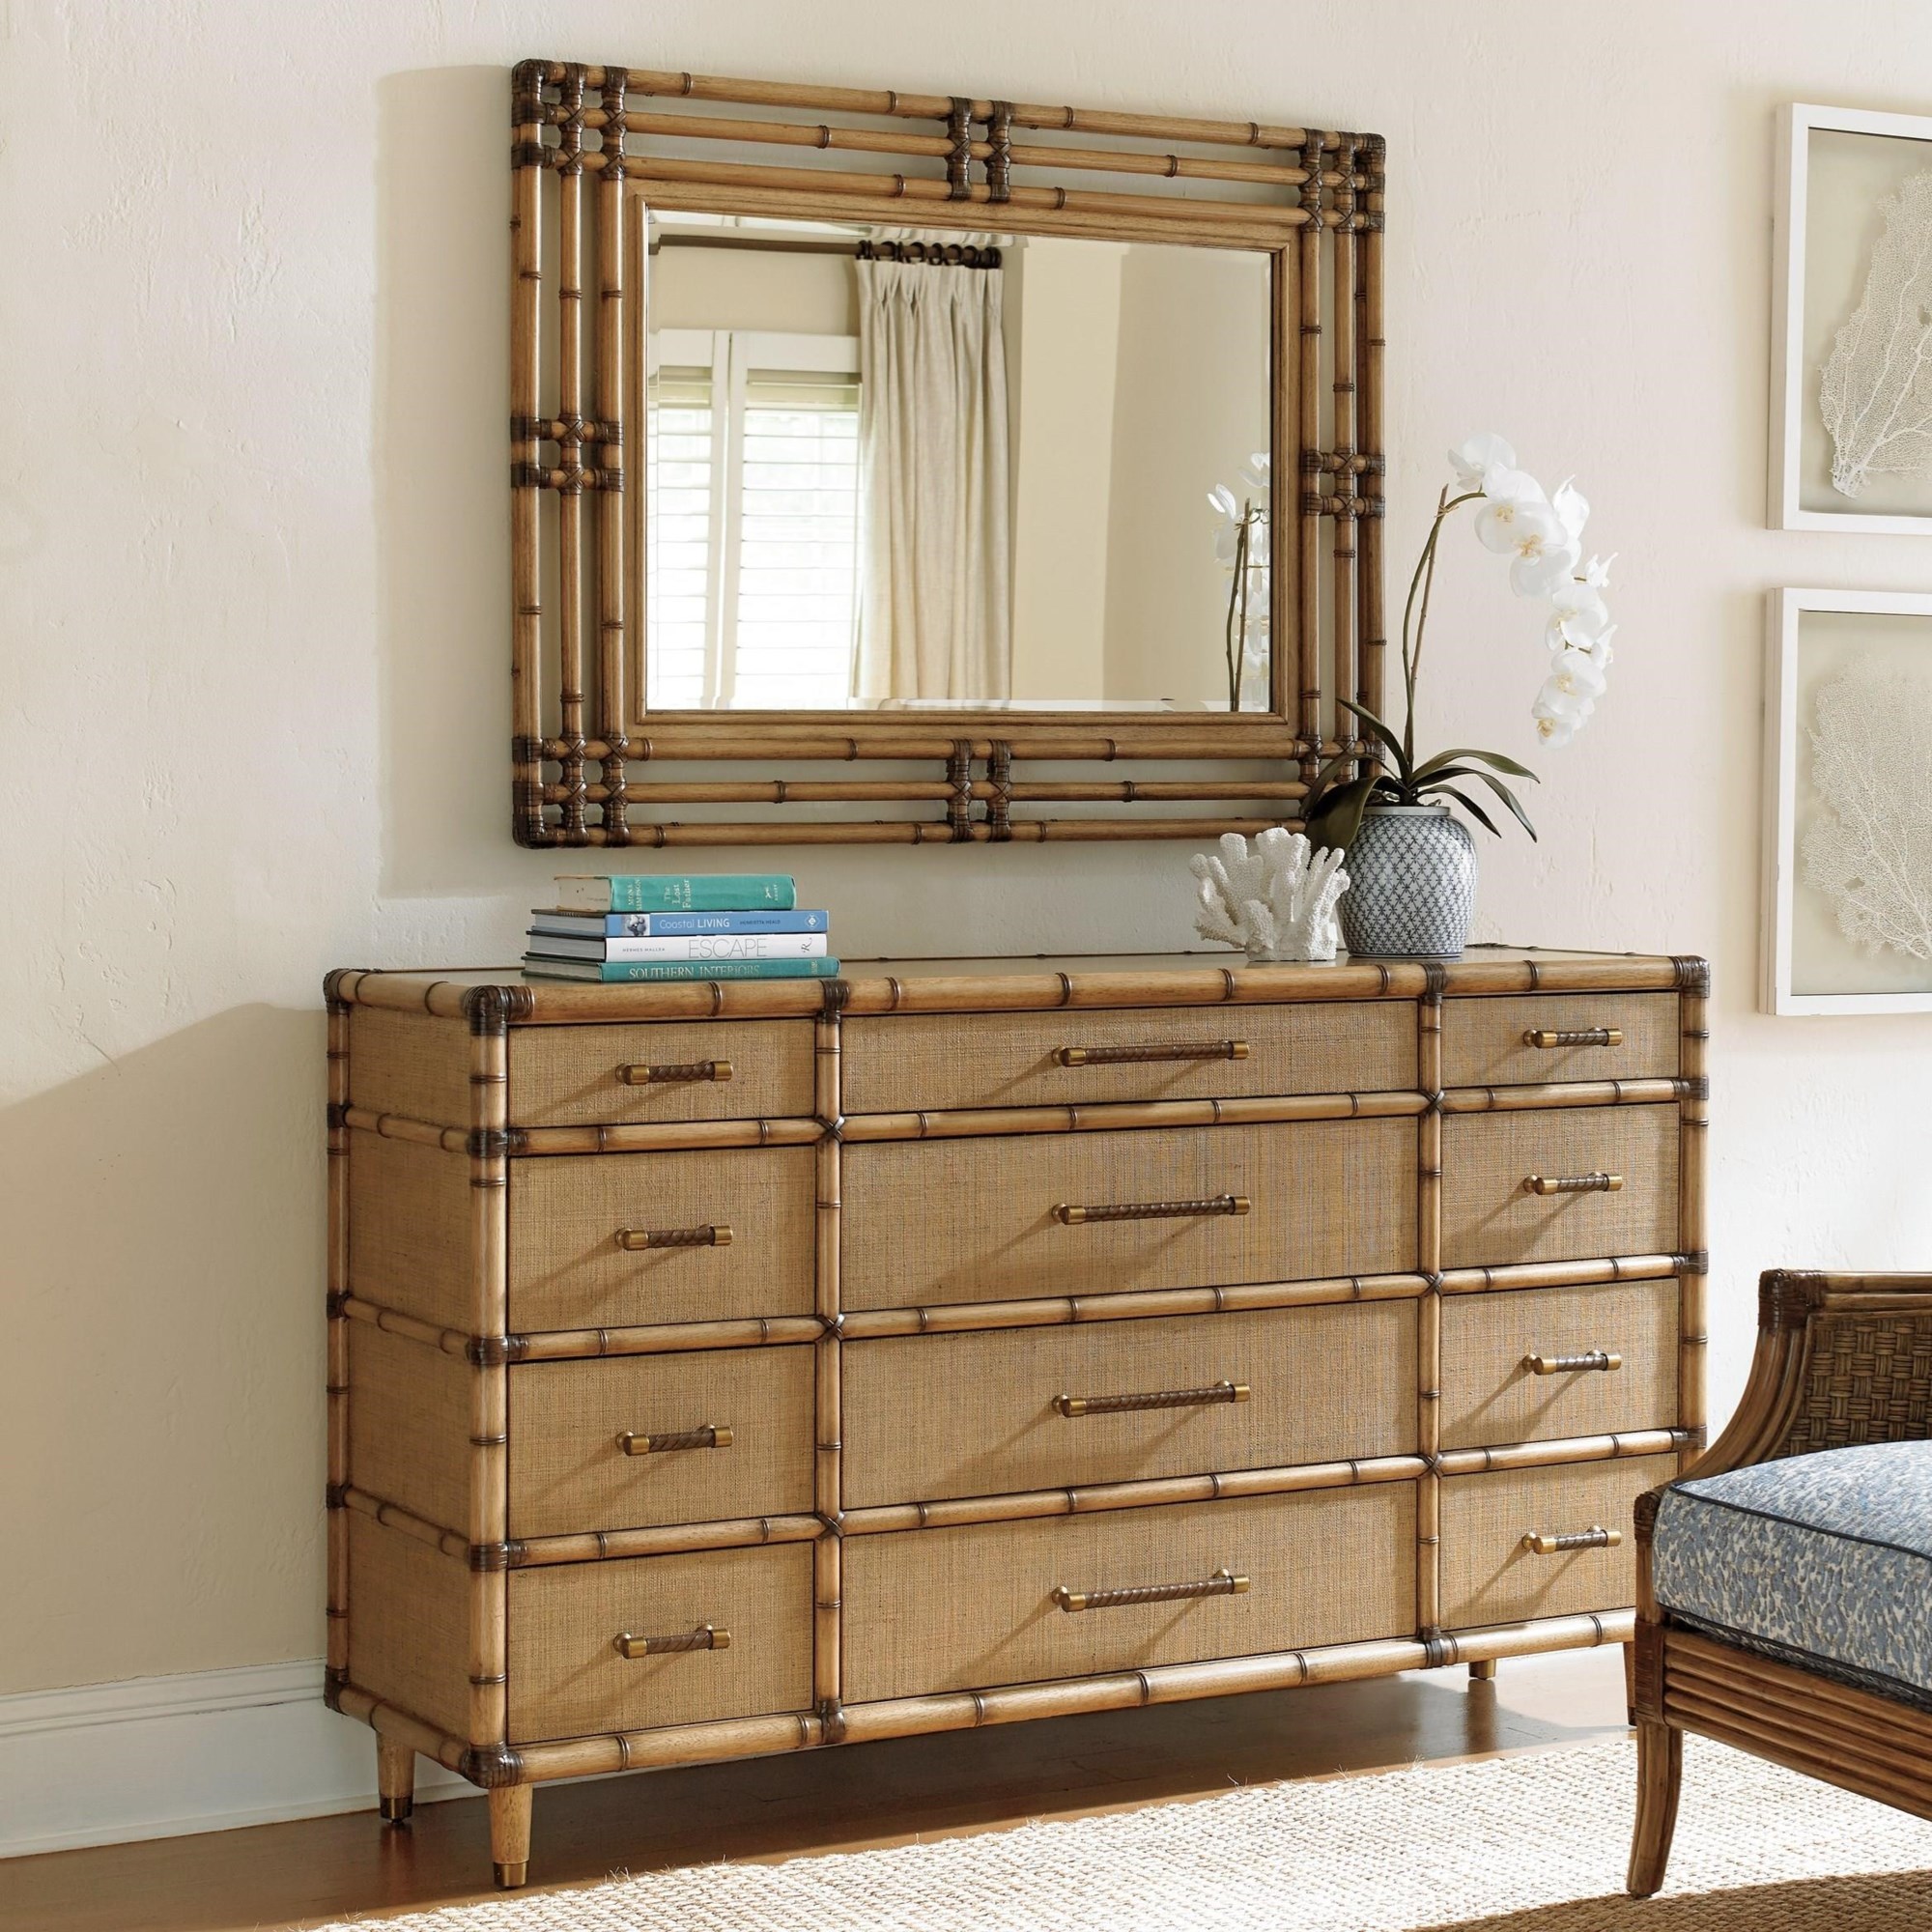 Windward Twelve Drawer Dresser and Savana Mirror Set